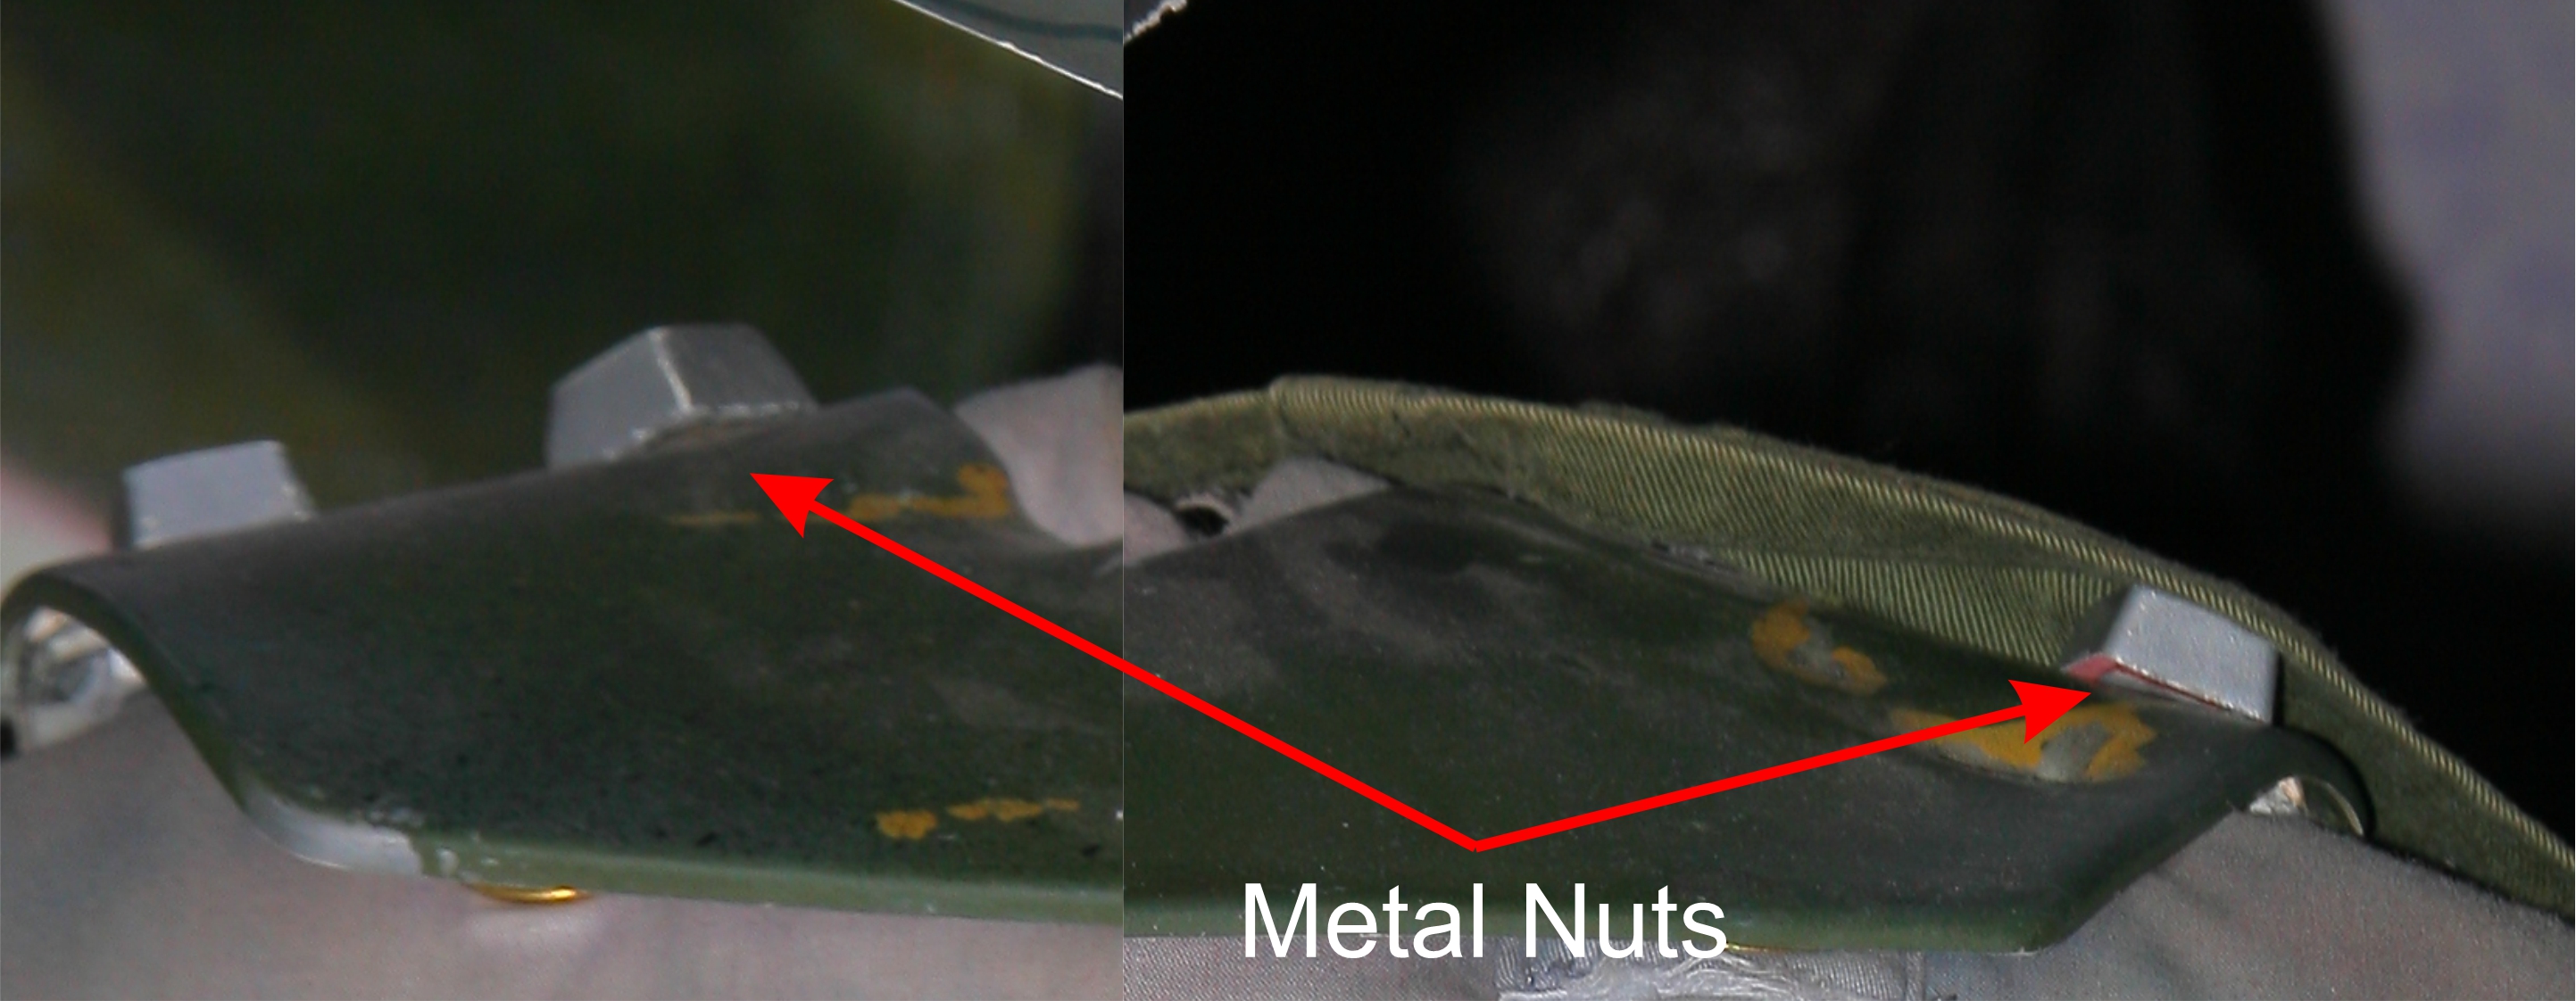 Stud Metal Nuts 1.jpg